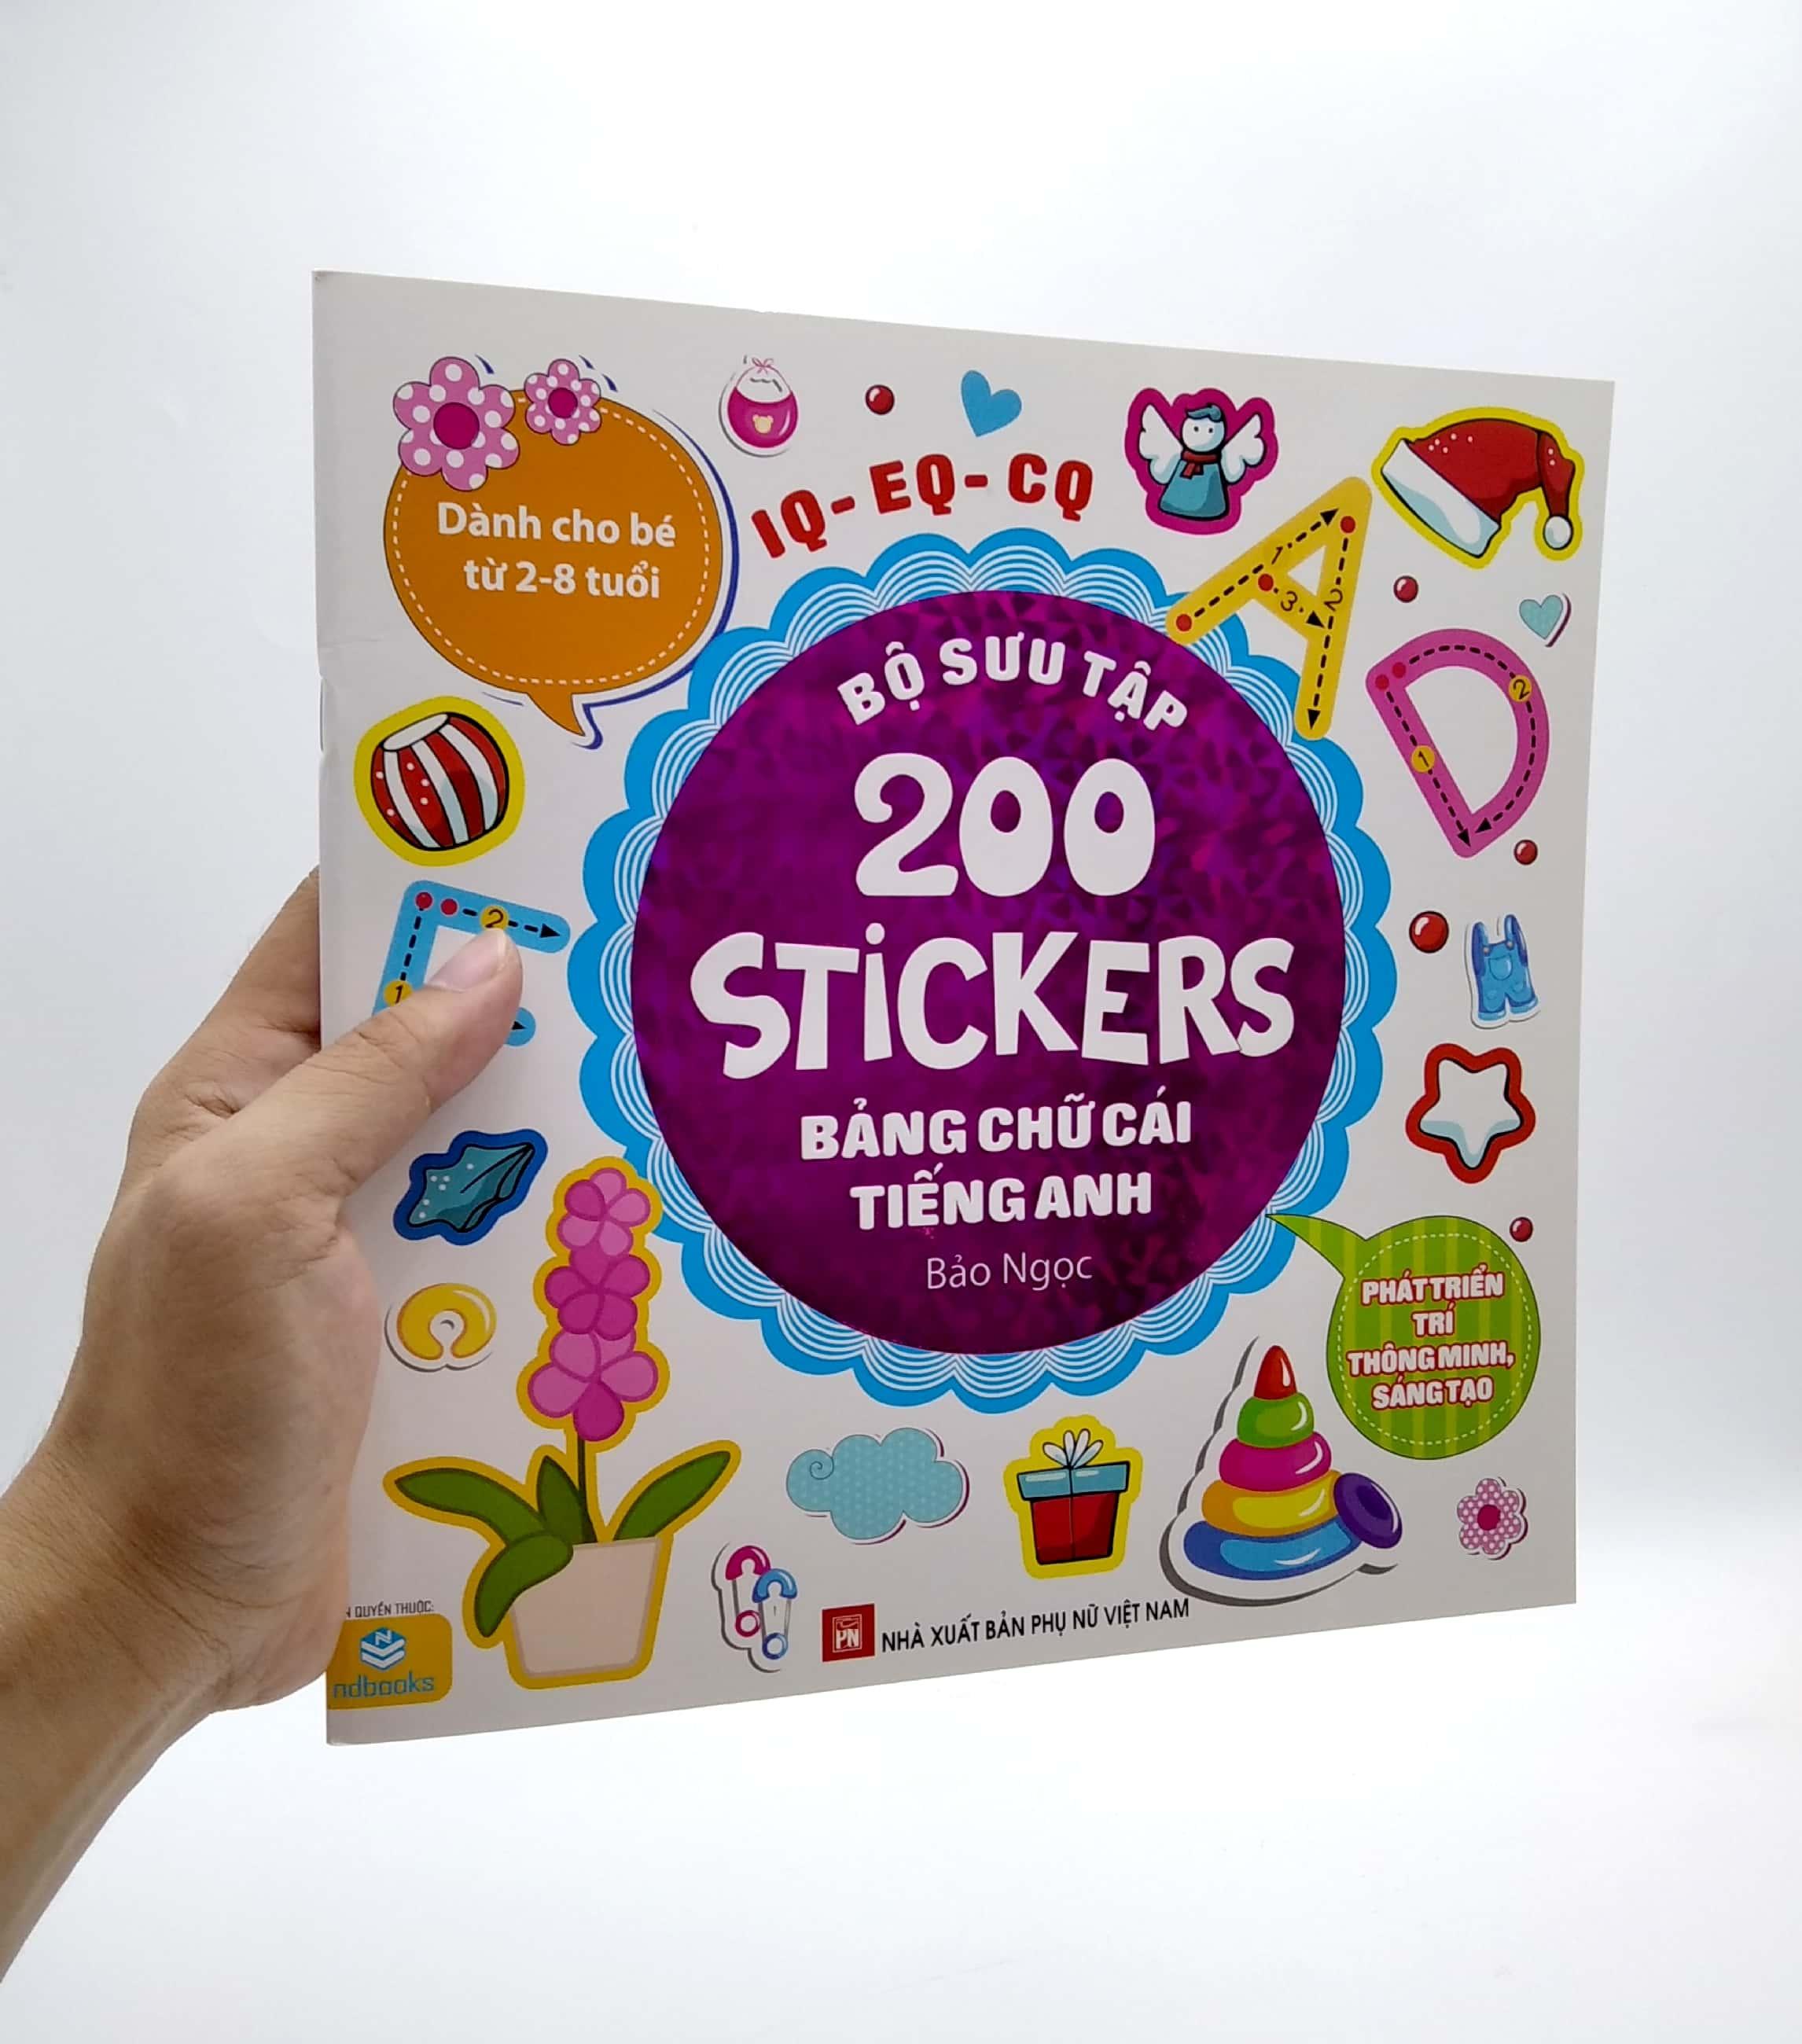 Bộ Sưu Tập 200 Stickers - Bảng Chữ Cái Tiếng Anh